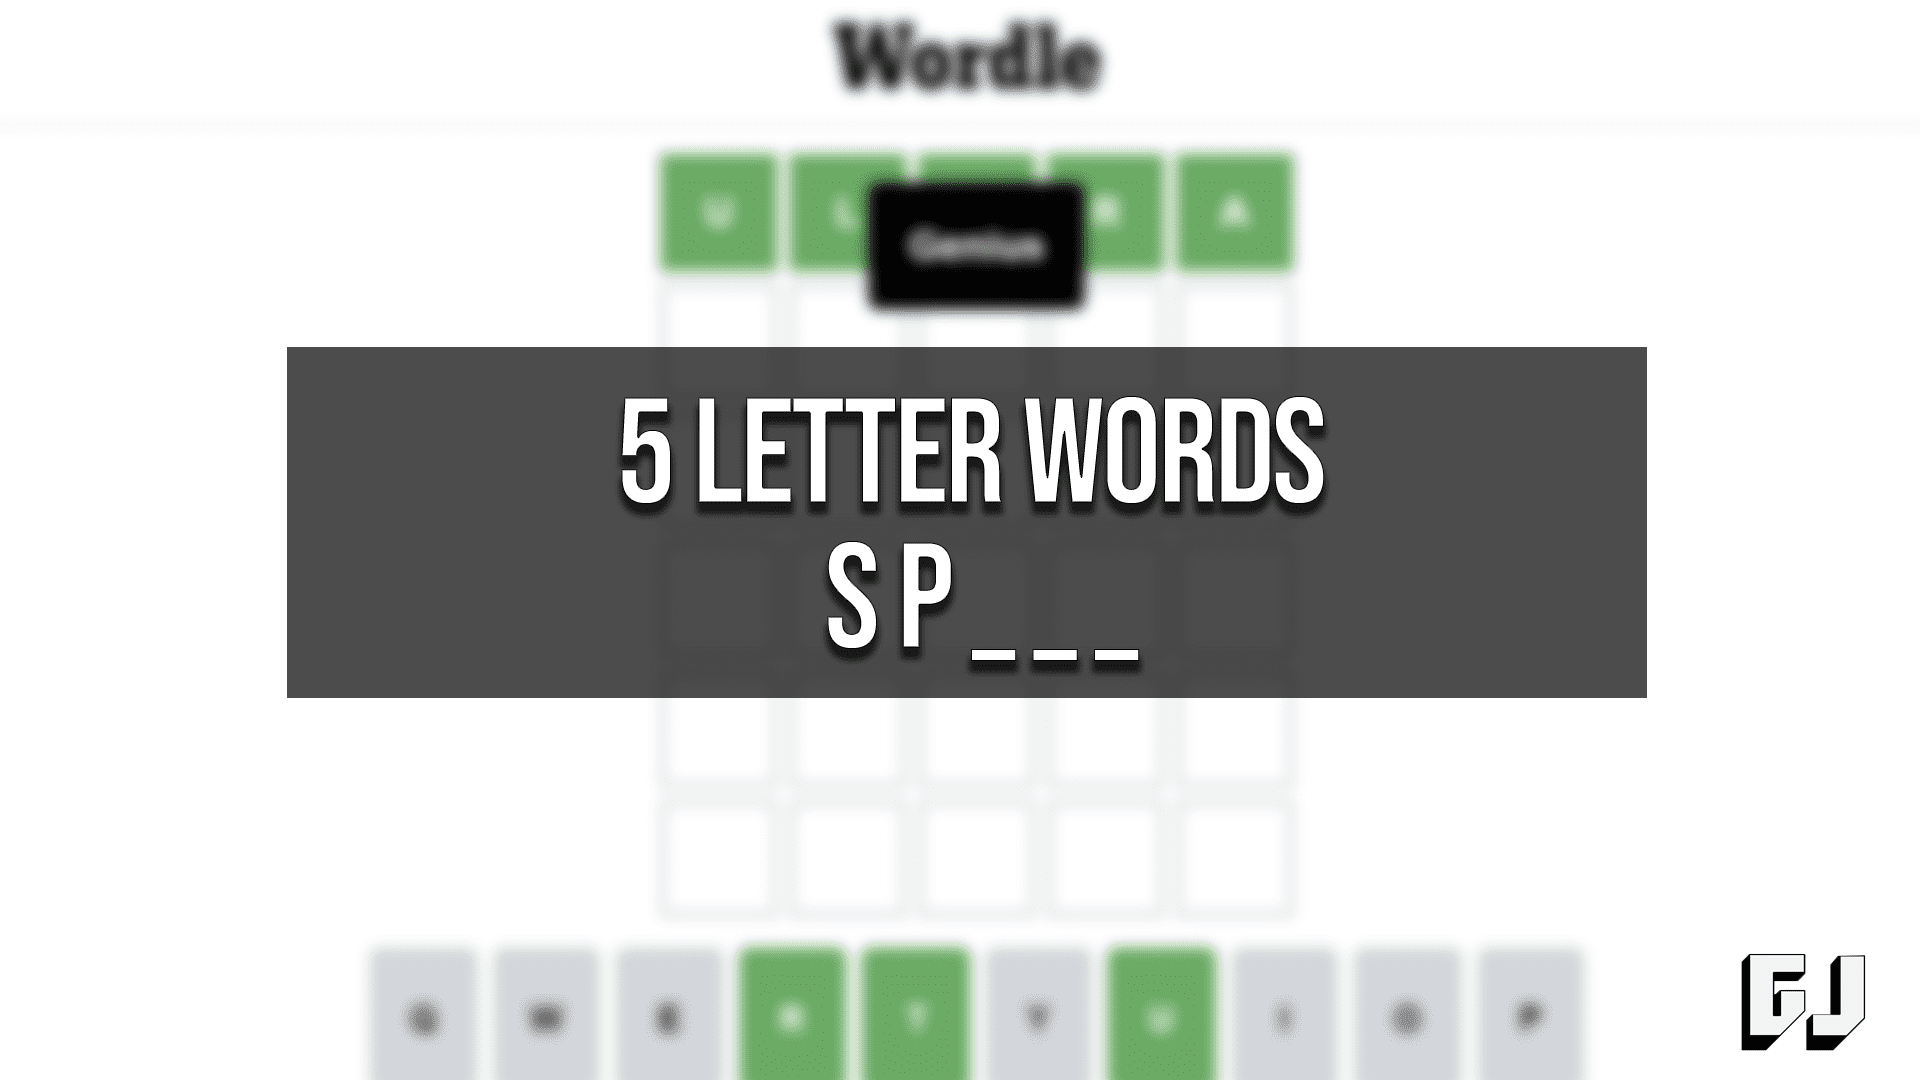 Palavras de 5 letras começando SP